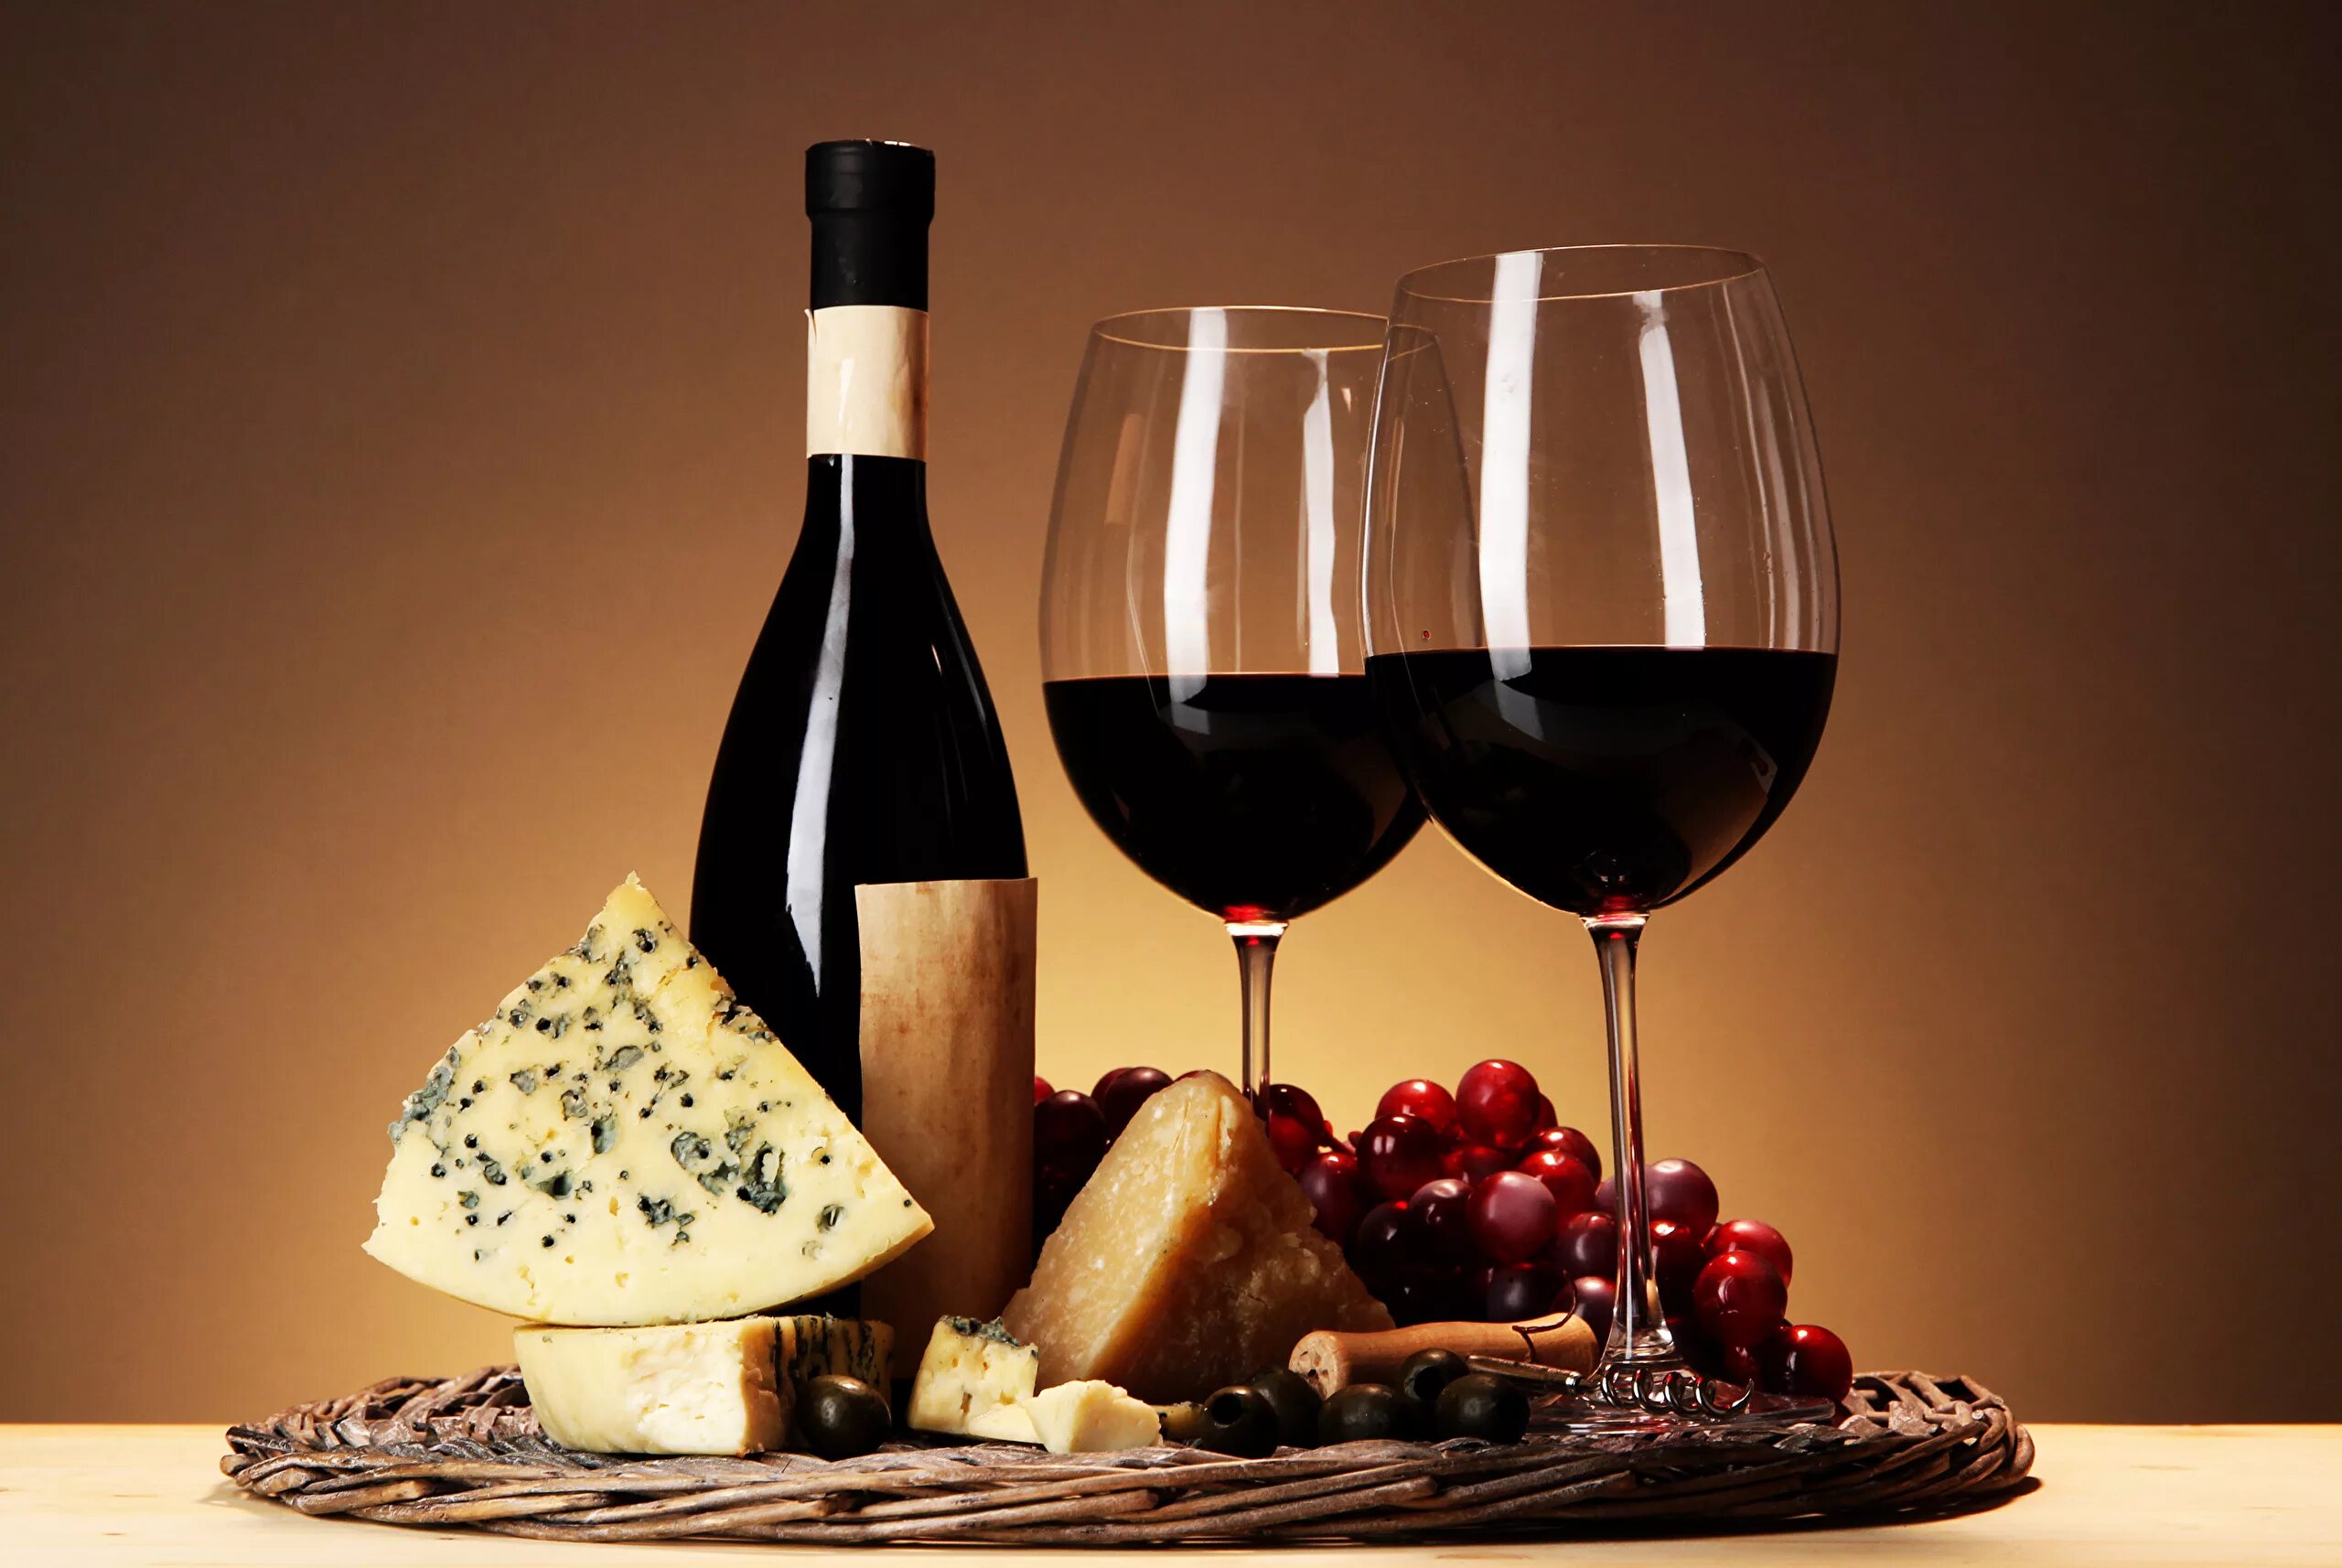 Картинку вине. Вино. Алмазная мозаика вино. Сыр и вино алмазная мозаика. Алмазная мозаика бутылка вина.